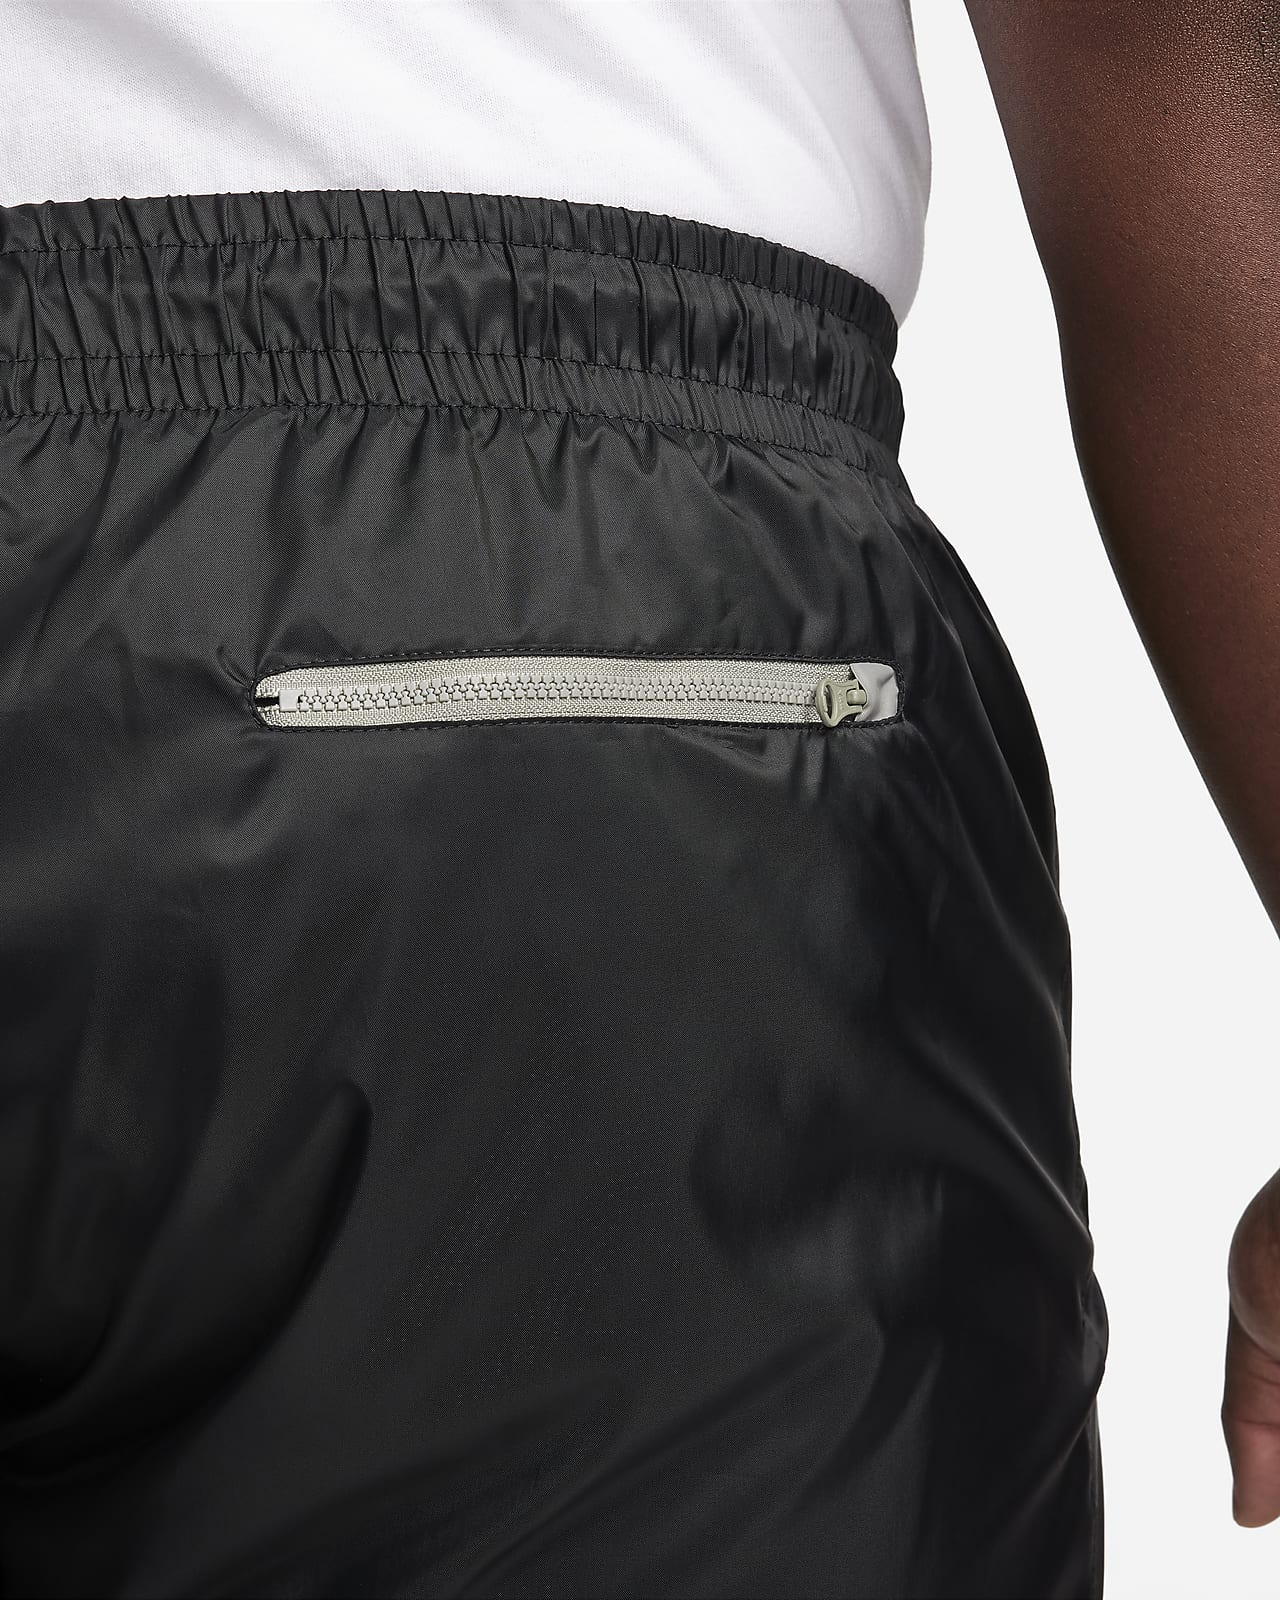 Nike Windrunner Men's Woven Lined Trousers. Nike CA